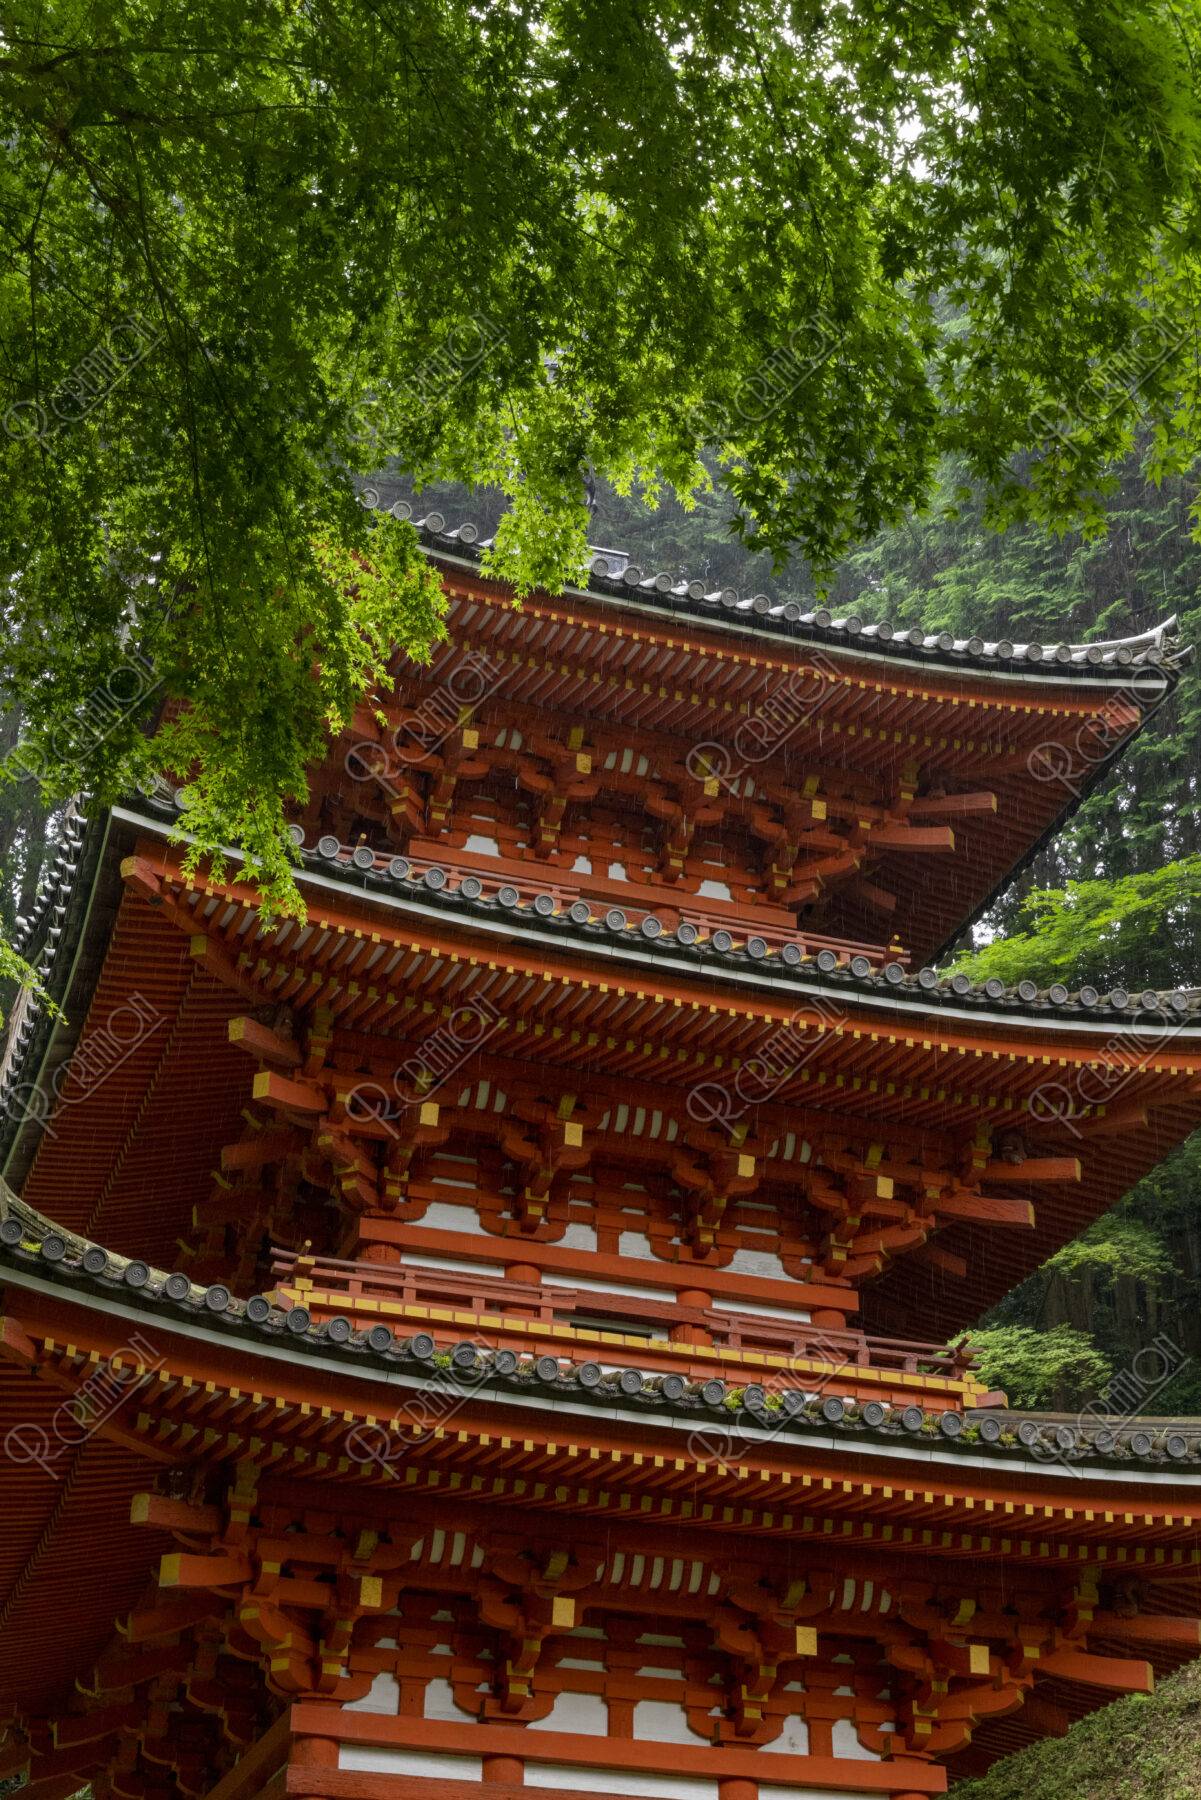 新緑の岩船寺三重塔